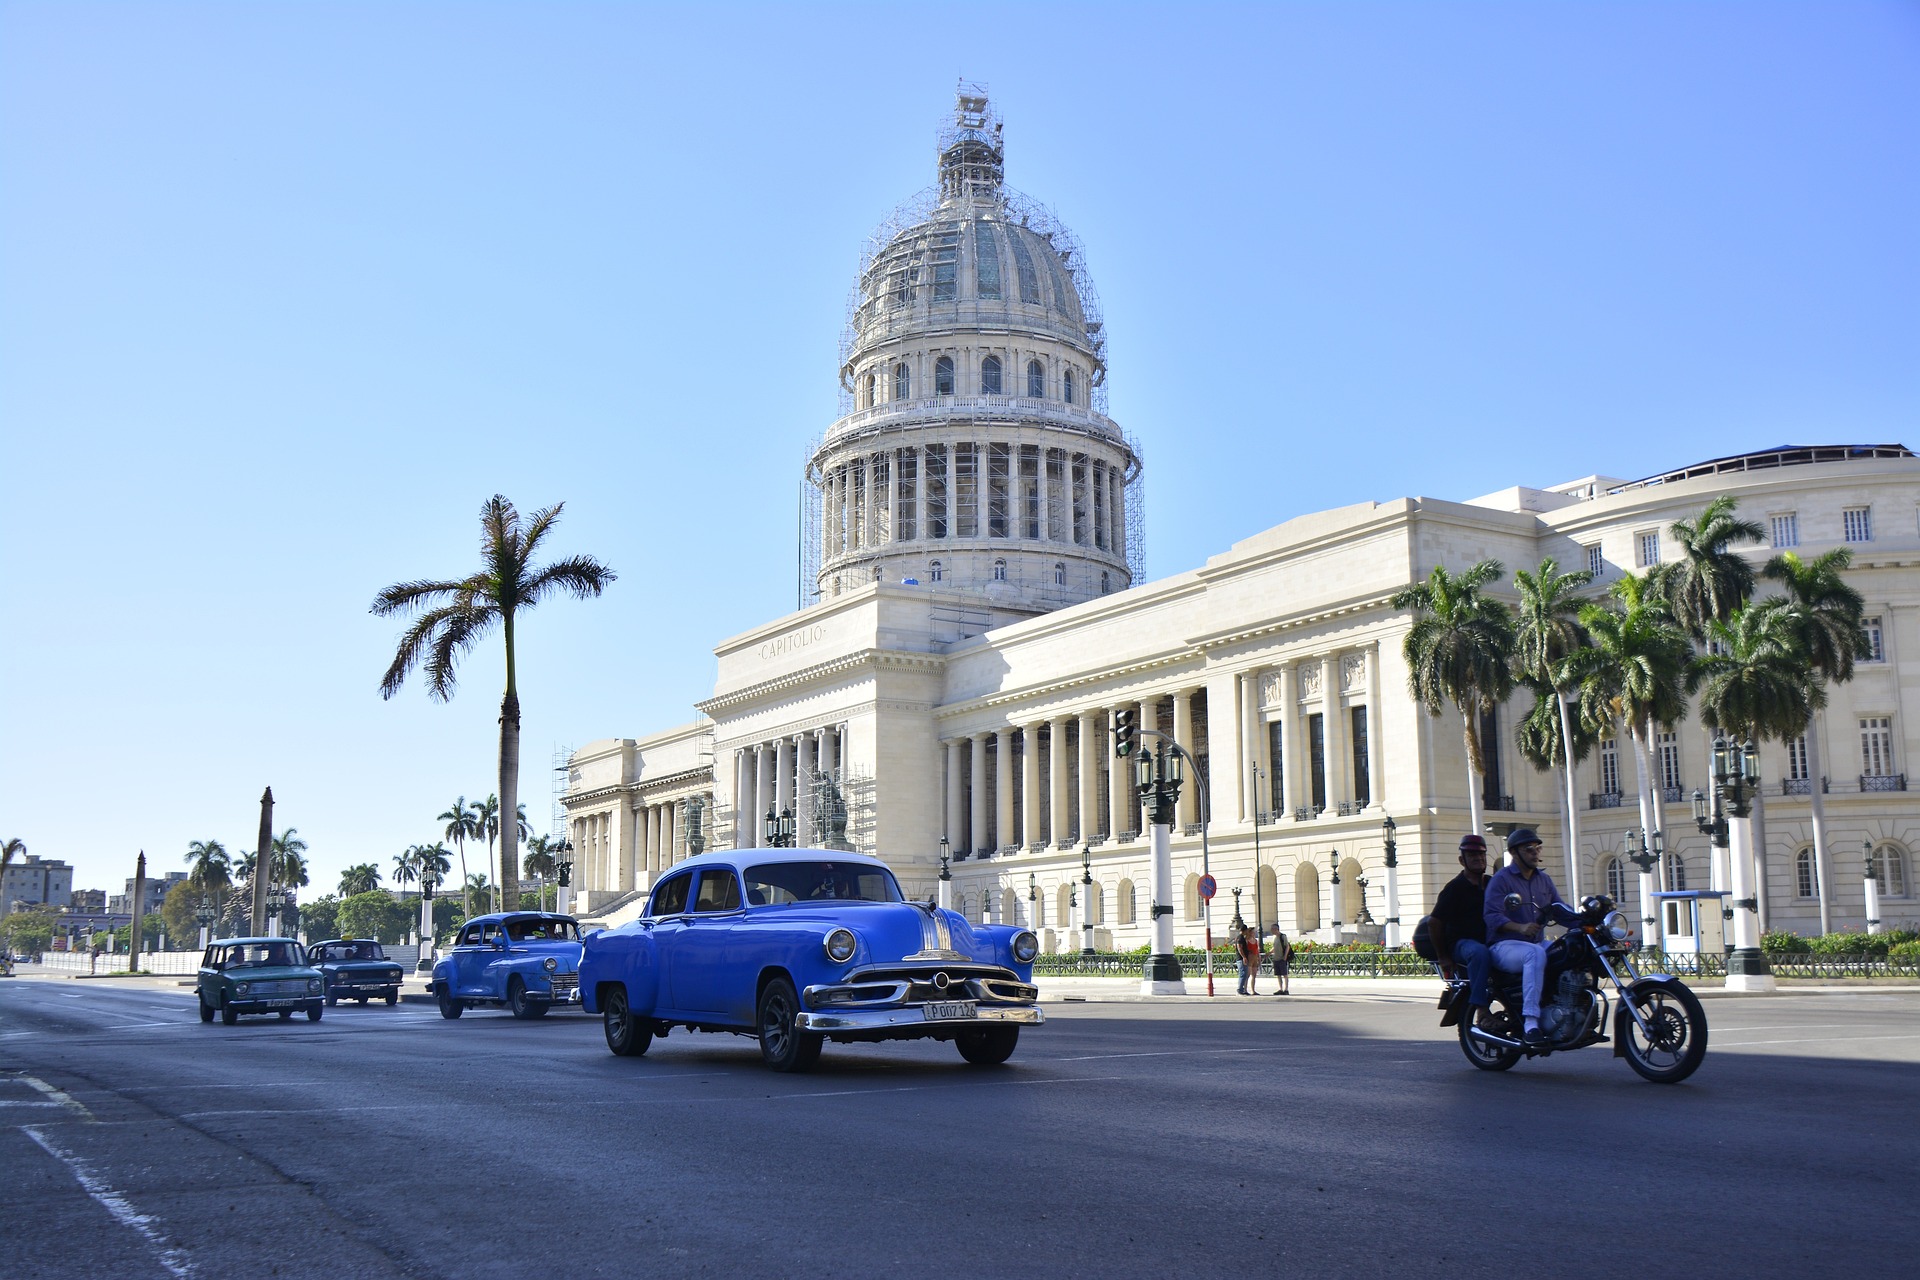 Pour entrer à Cuba, il vous faudra aussi disposer d'une assurance couvrant les frais médicaux si jamais, tout comme un rapatriement. Elle vous sera demandée à votre arrivée.